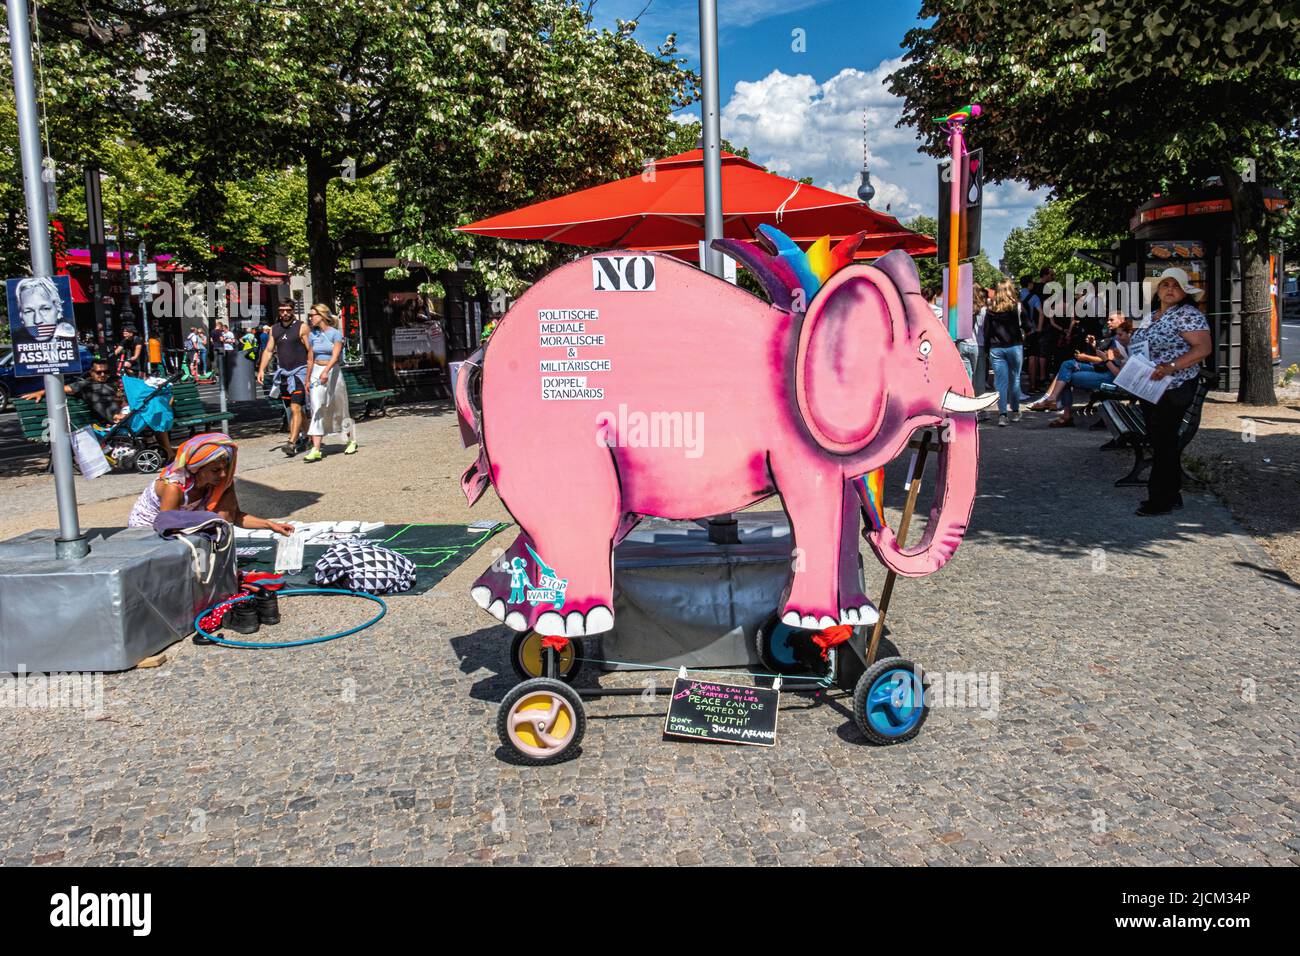 Démonstration gratuite de Julian Assange & Stop Wars avec éléphant rose à Unter den Linden, Mitte, Berlin Banque D'Images